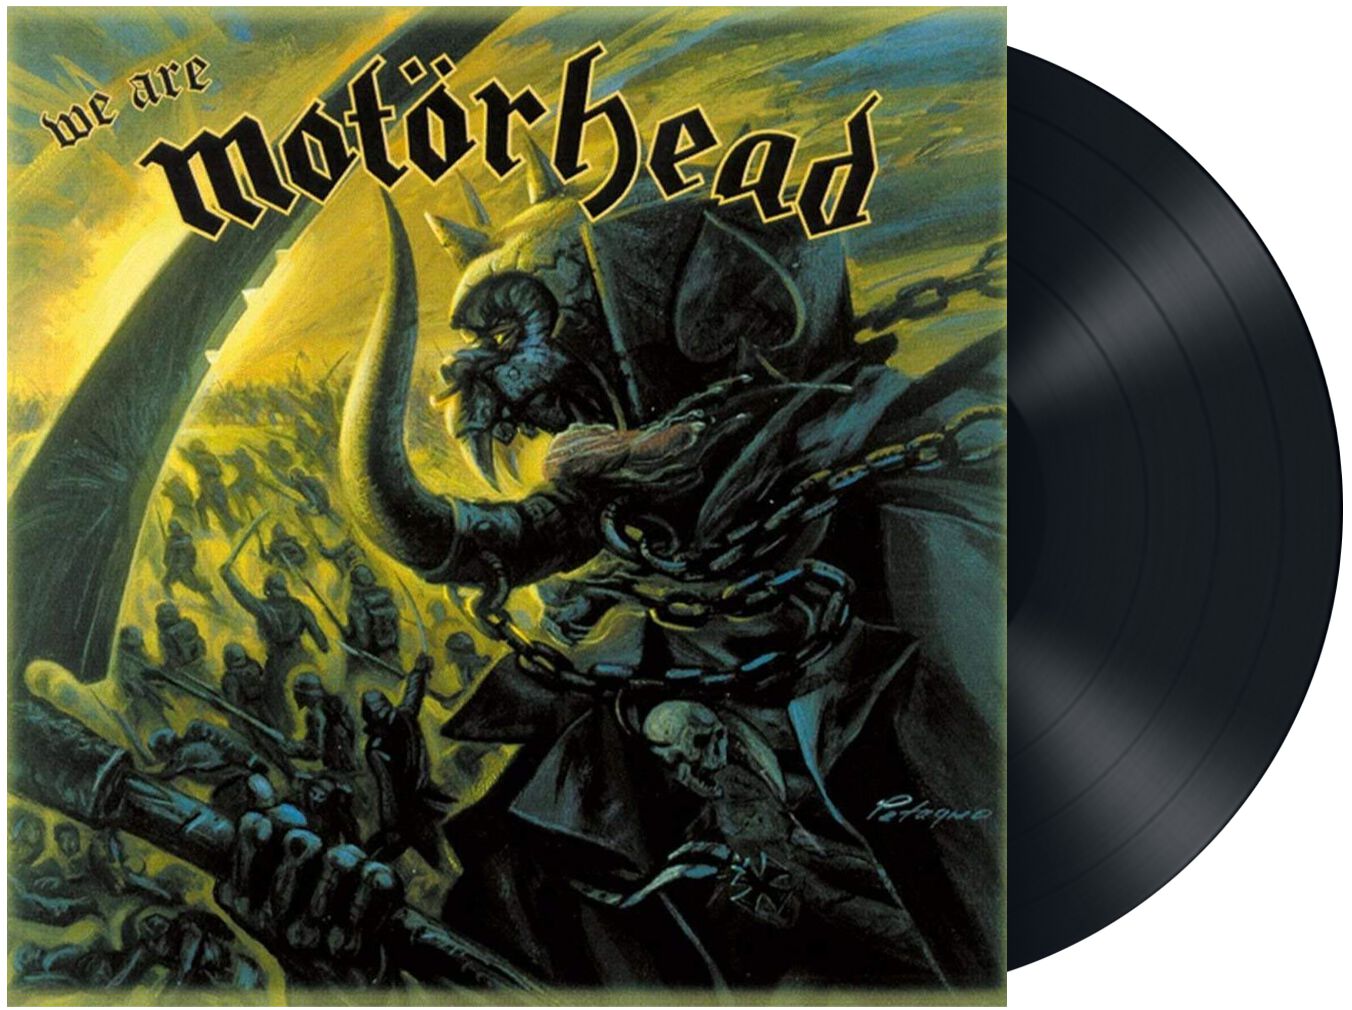 We Are Motörhead von Motörhead - LP (Re-Release, Standard)